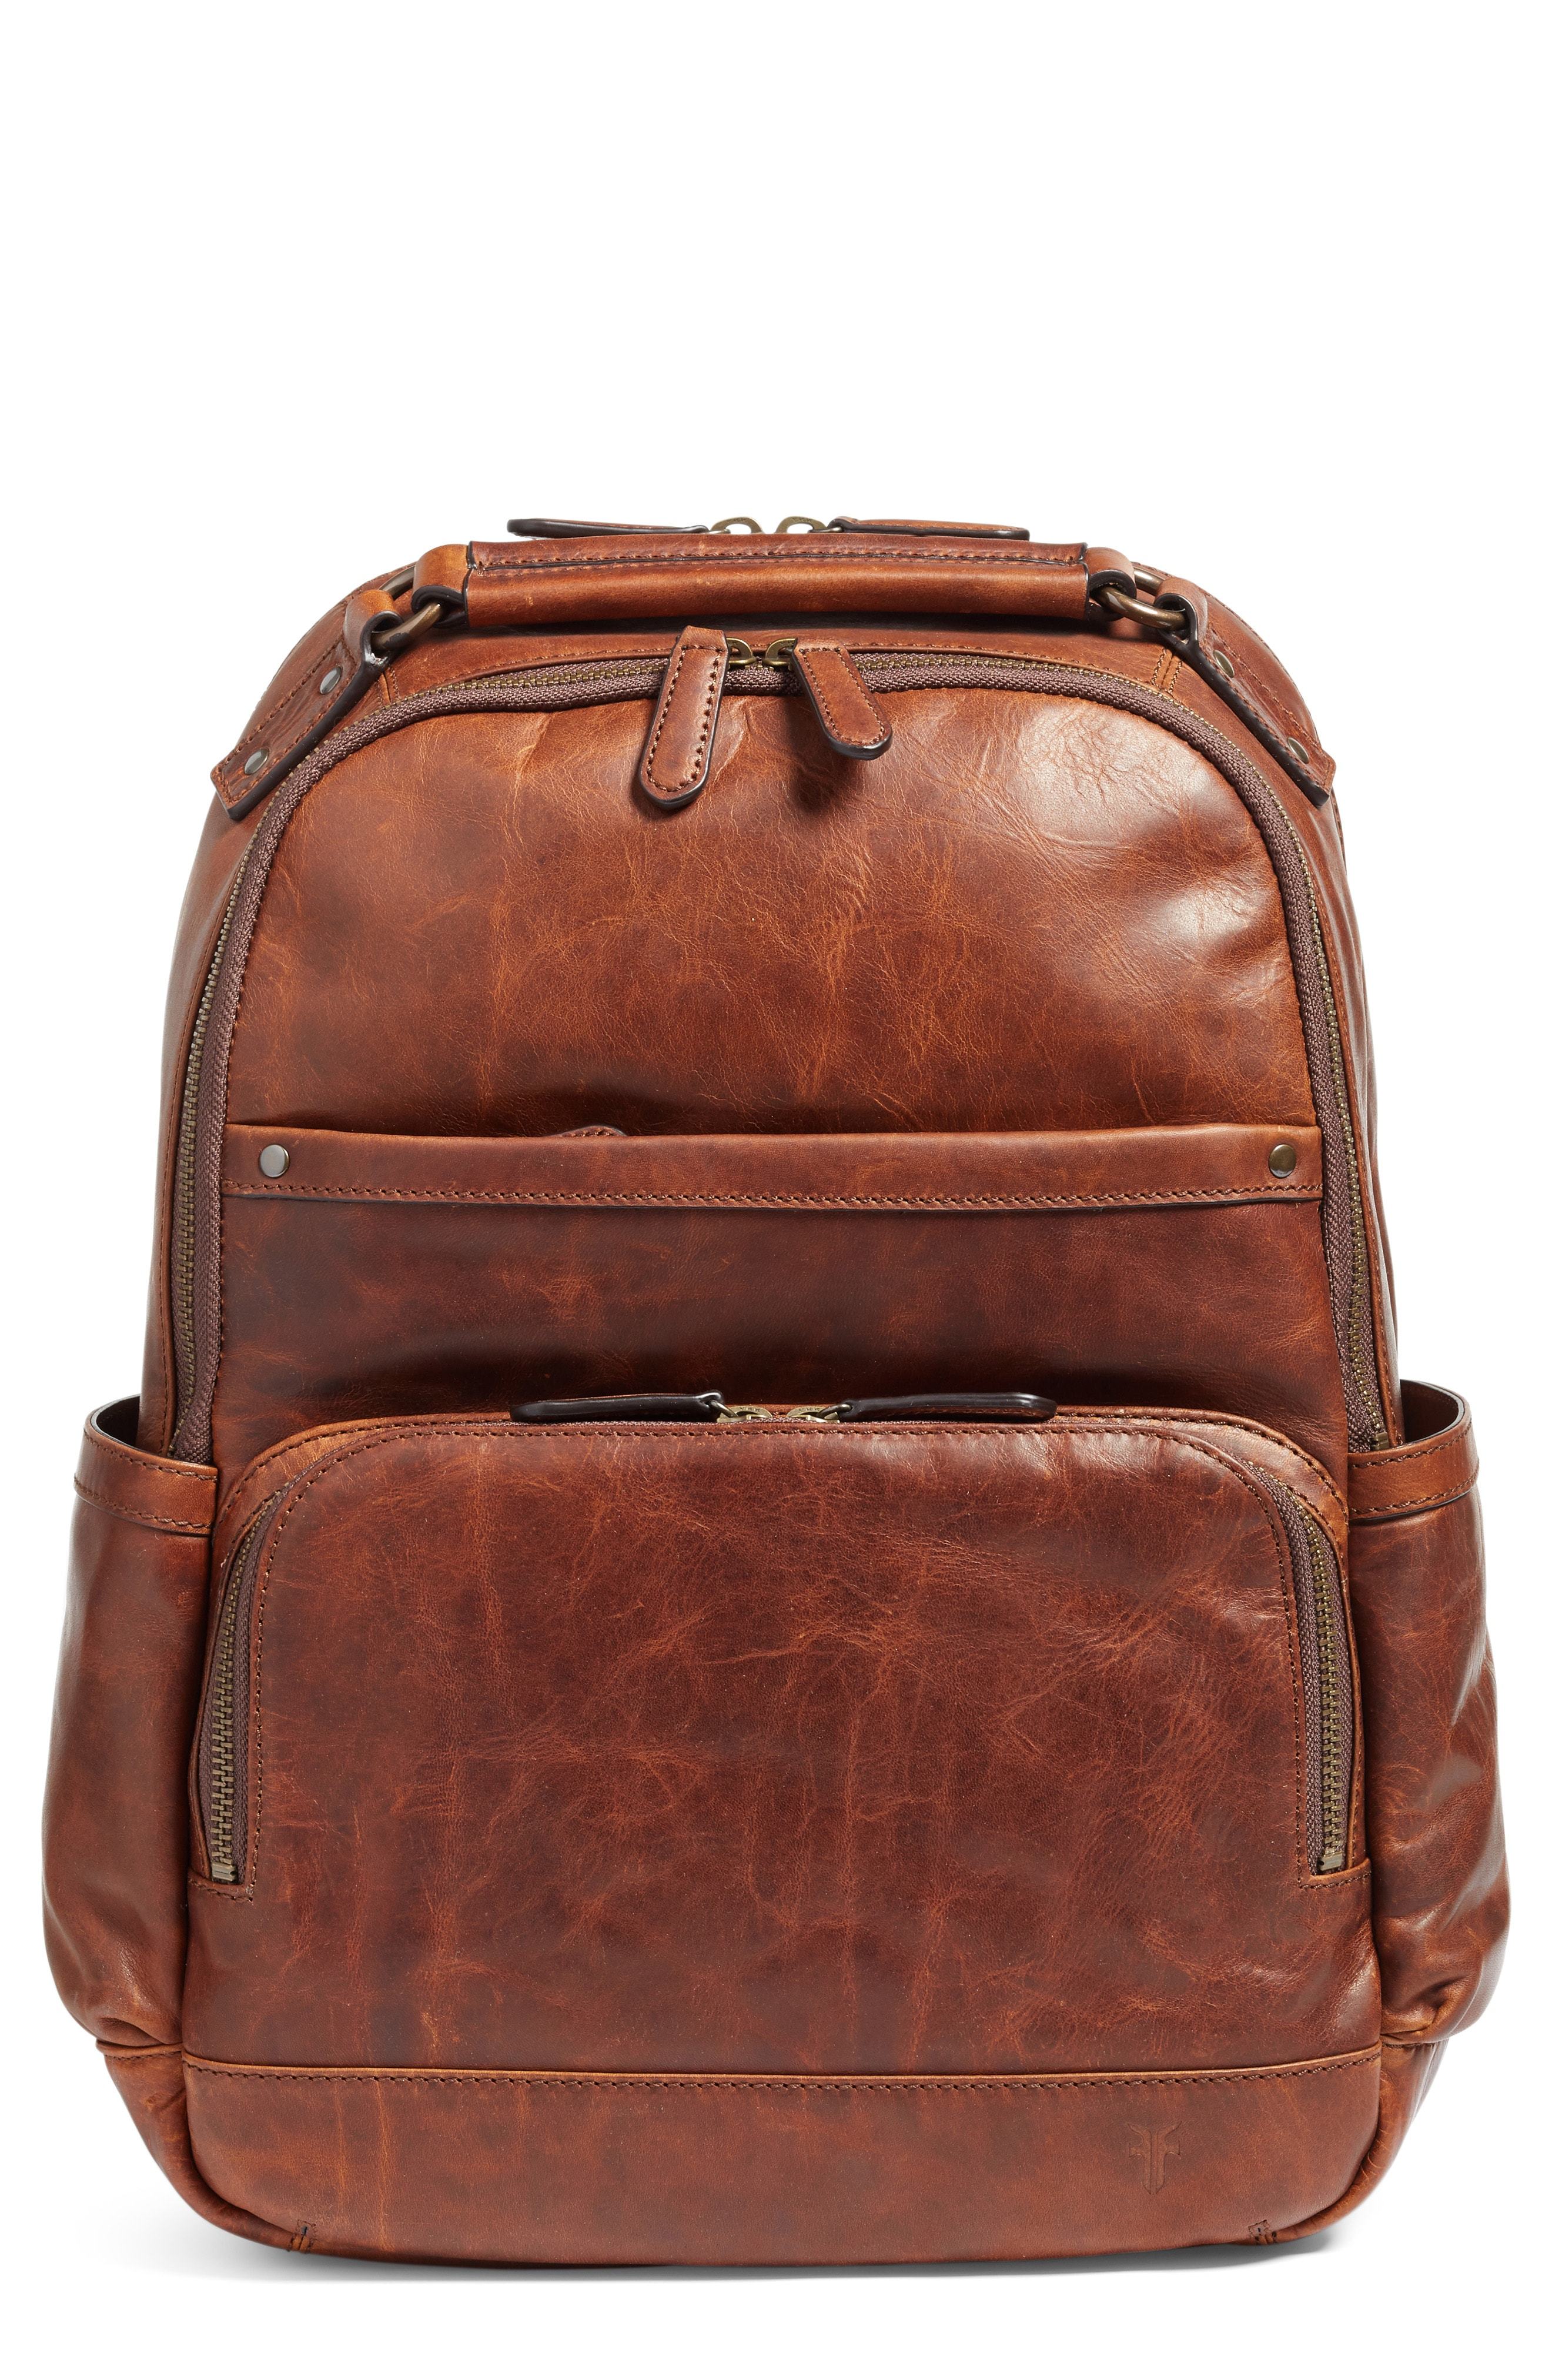 Frye Logan Leather Backpack, $448, Nordstrom